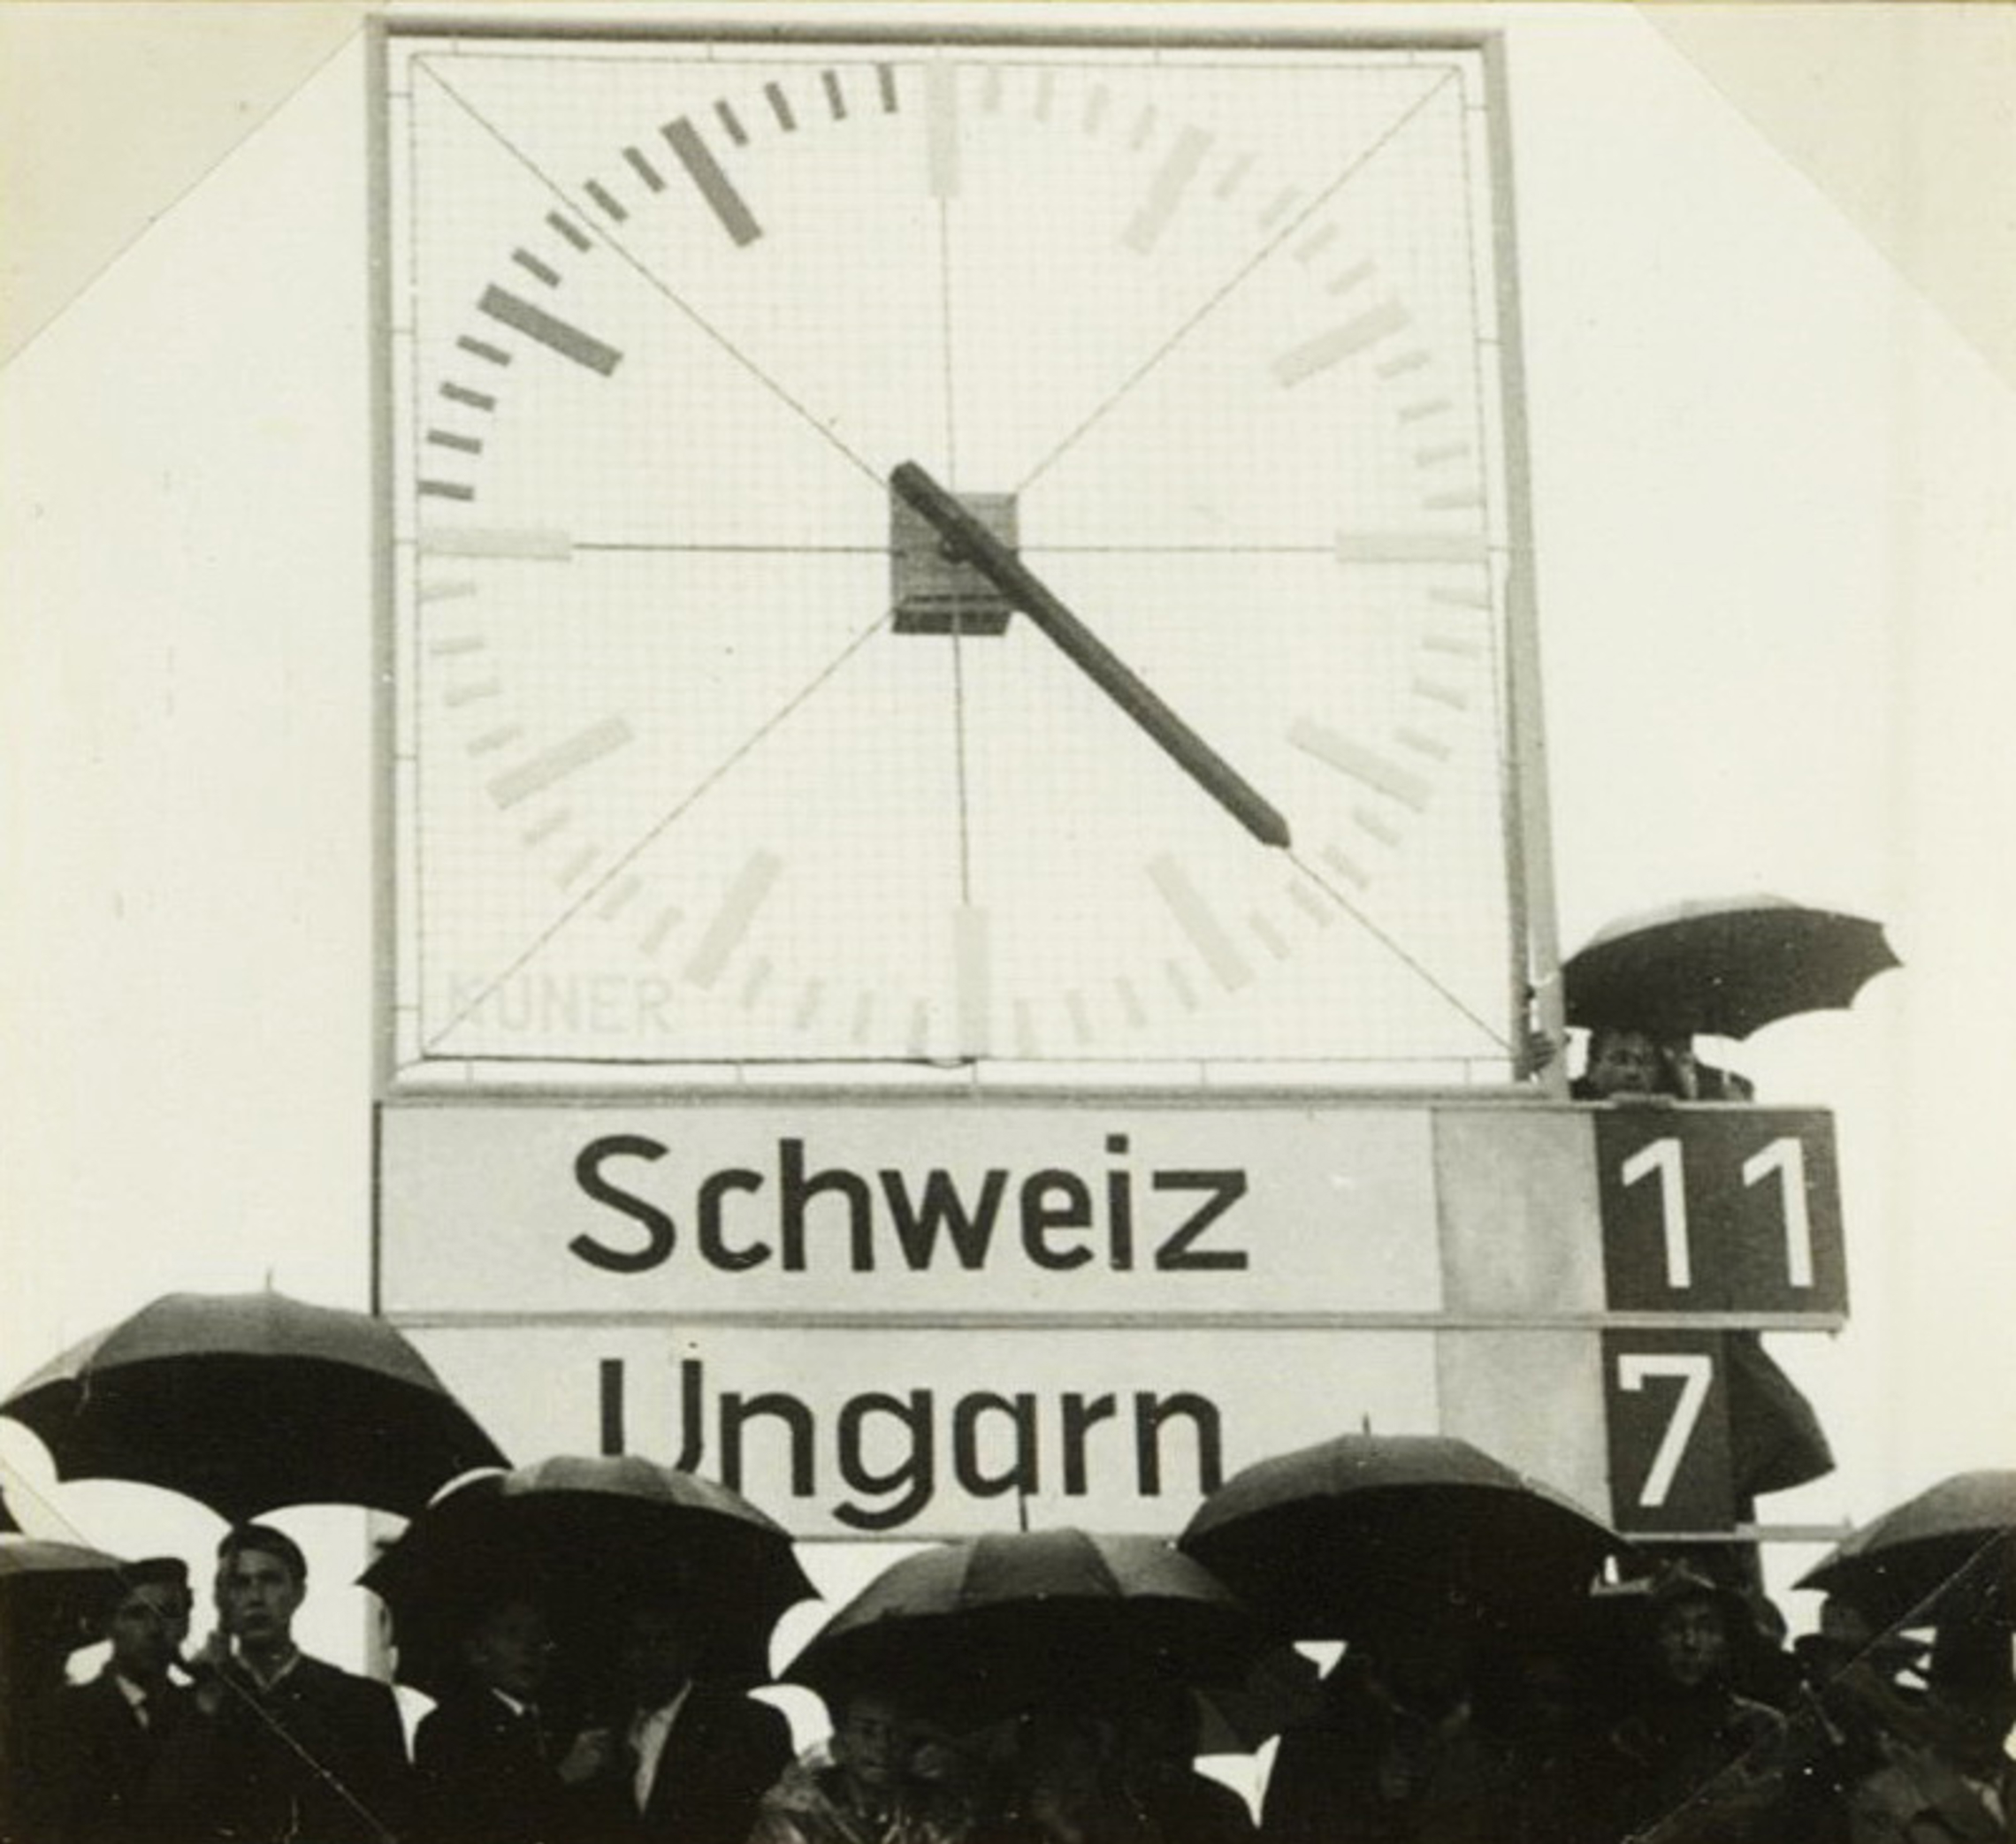 13.6.1959 Schweiz-Ungarn 11:7 (6:5), Bregenz, 4000 Zuschauer, Schiedsrichter Karl Jung, Augsburg GER